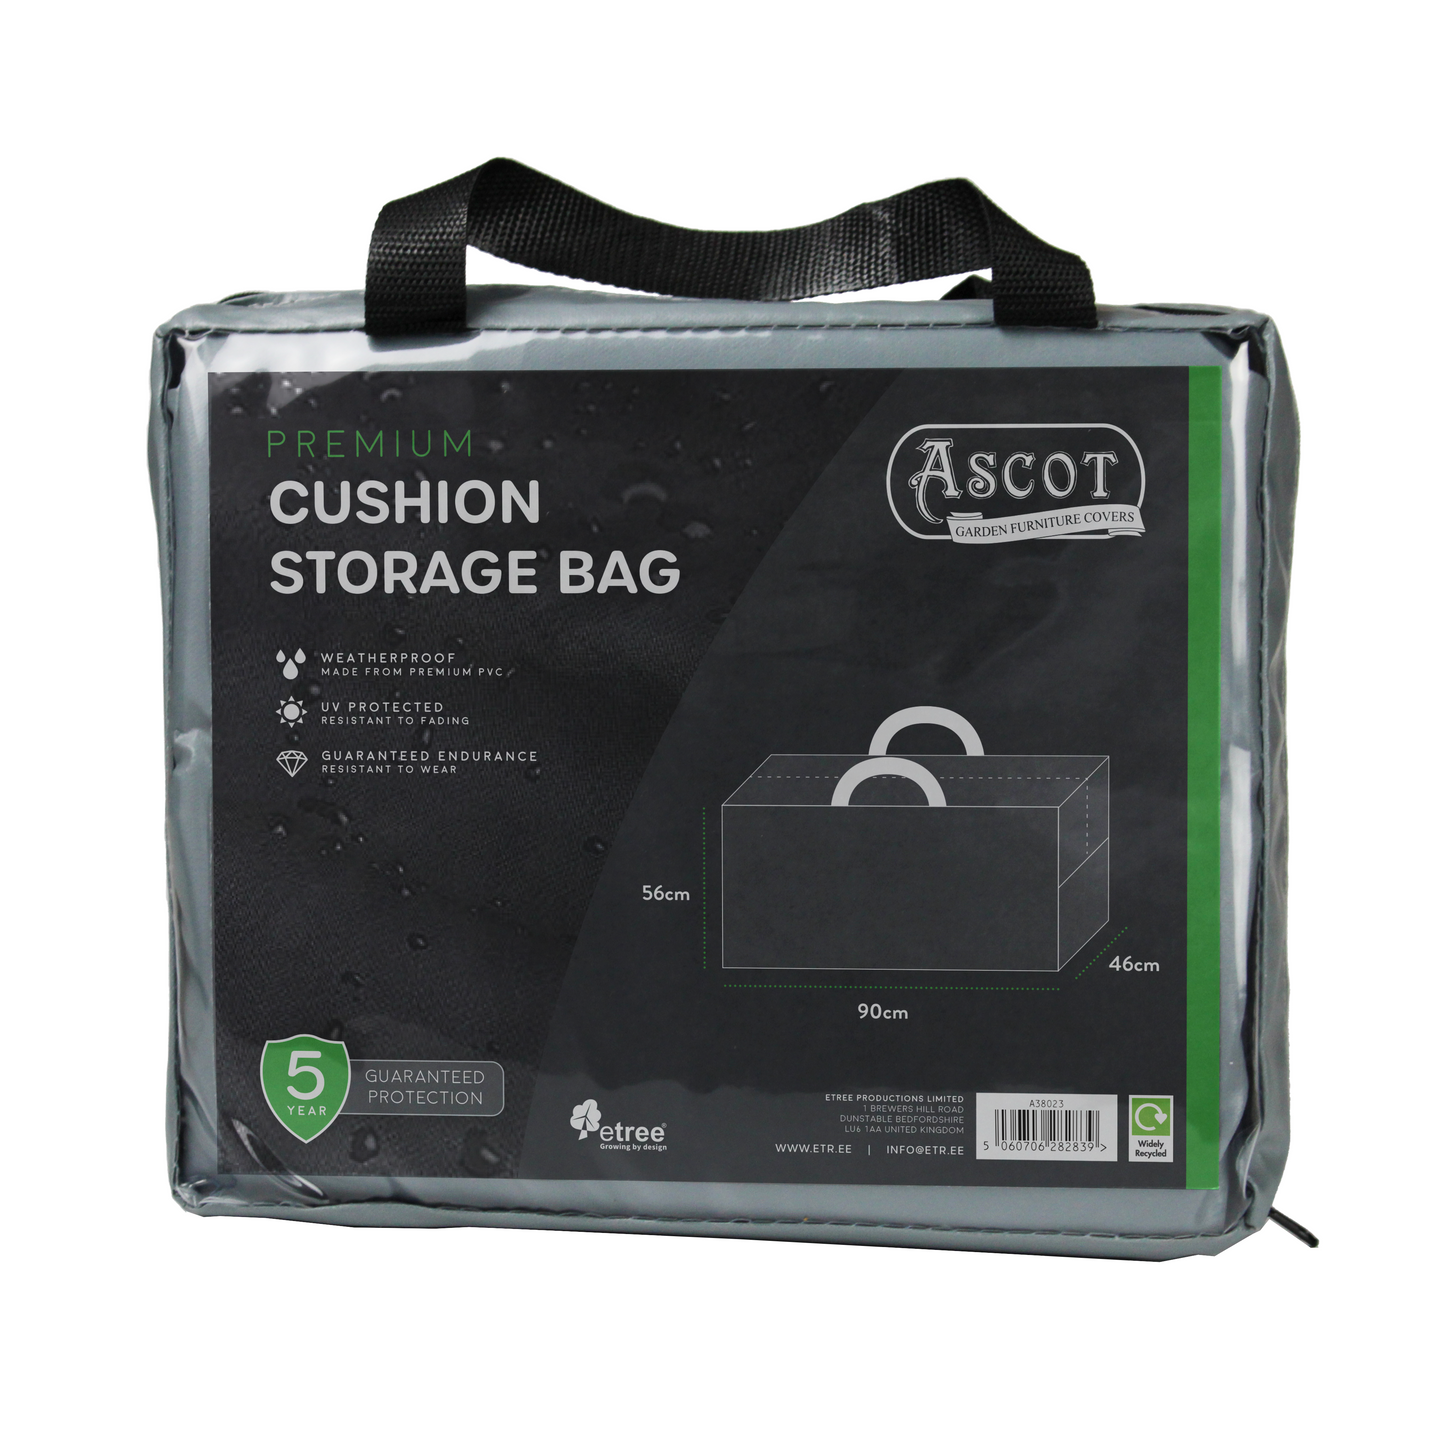 Premium Cushion Storage Bag - 90 X 46 X 56 H